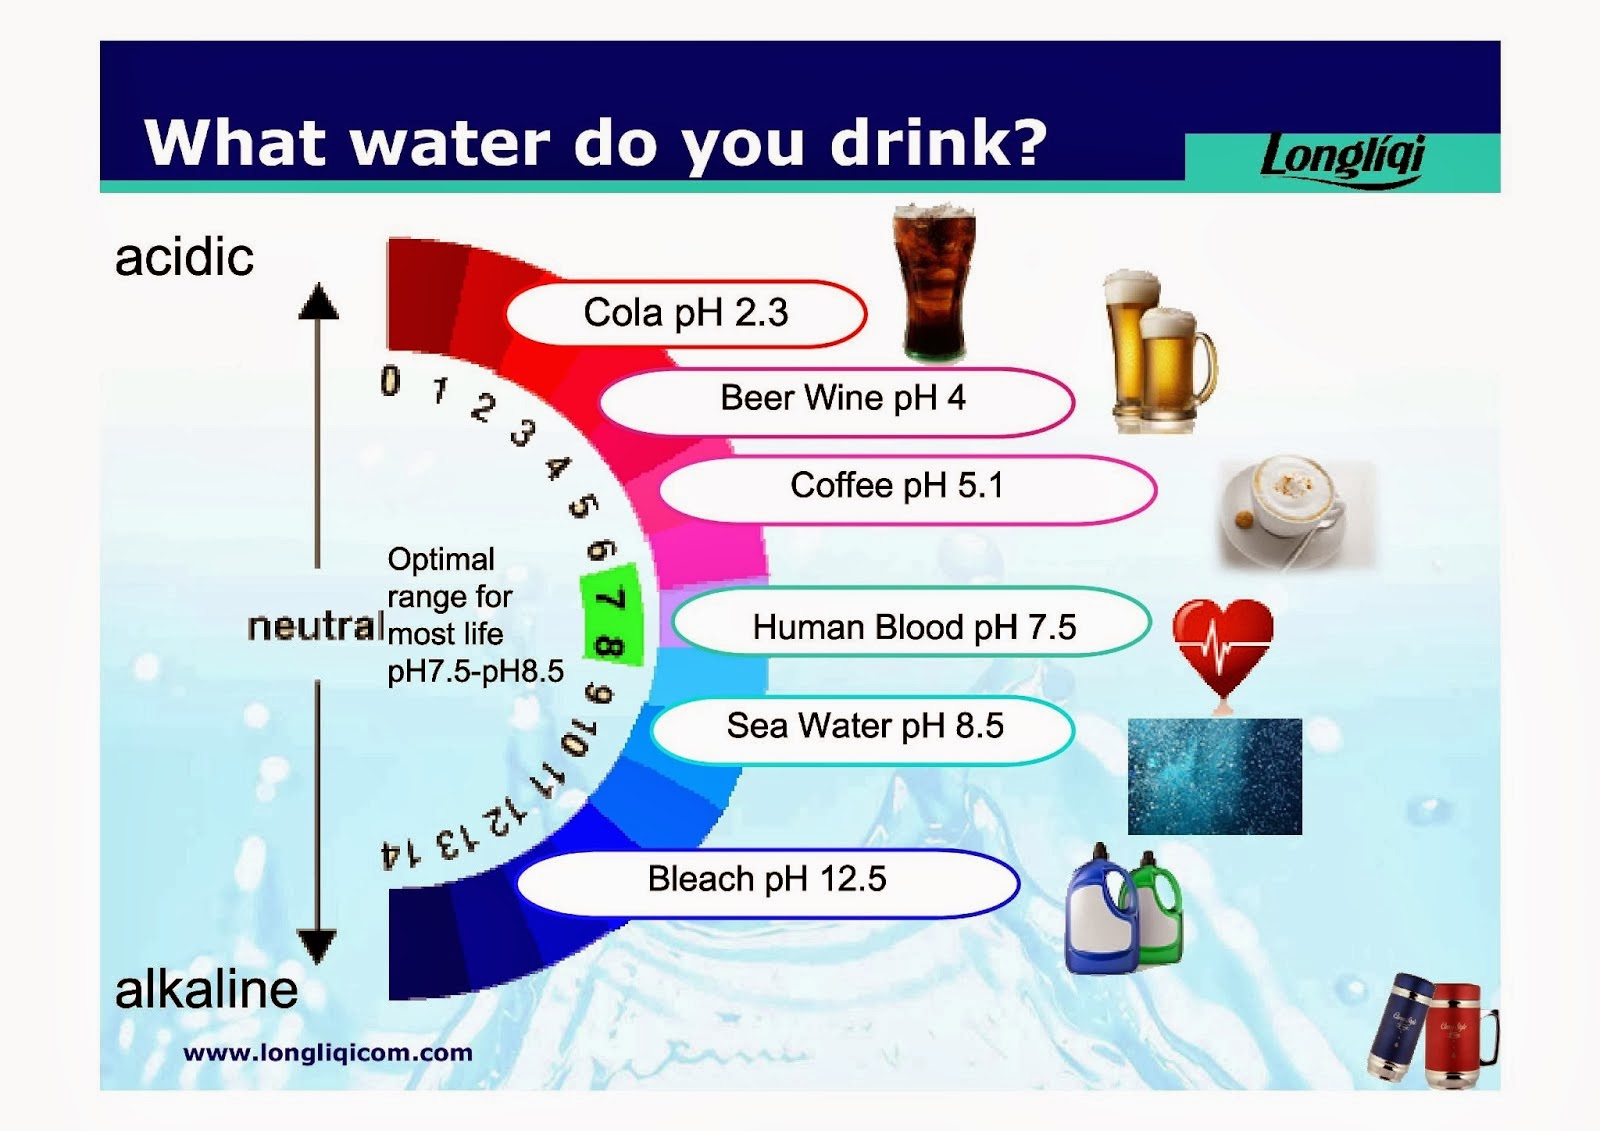 Качество воды качество жизни. Какую воду необходимо пить. Какая вода лучше для питья. Какая вода полезнее для питья. Какую воду мы пьем.